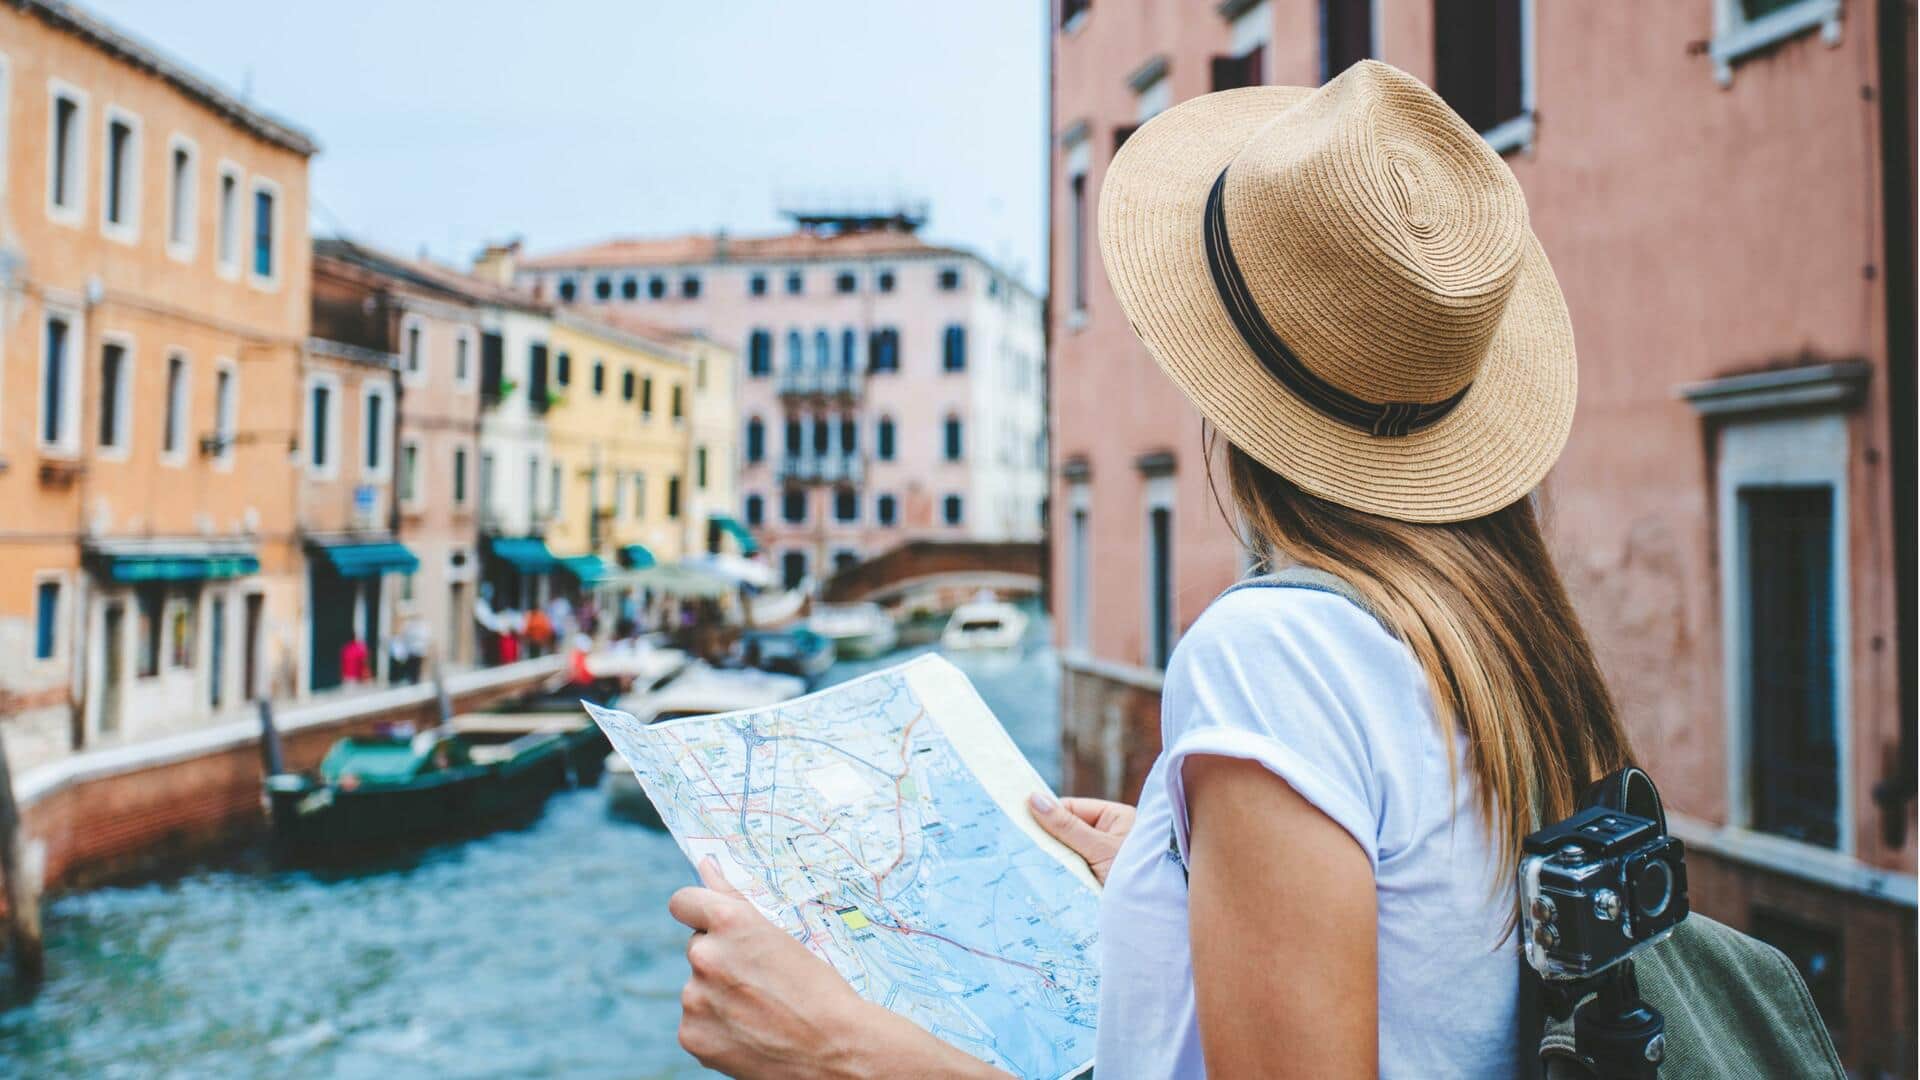 घूमने के लिए इटली जा रहे हैं तो भूलकर भी न करें ये 5 गलतियां 